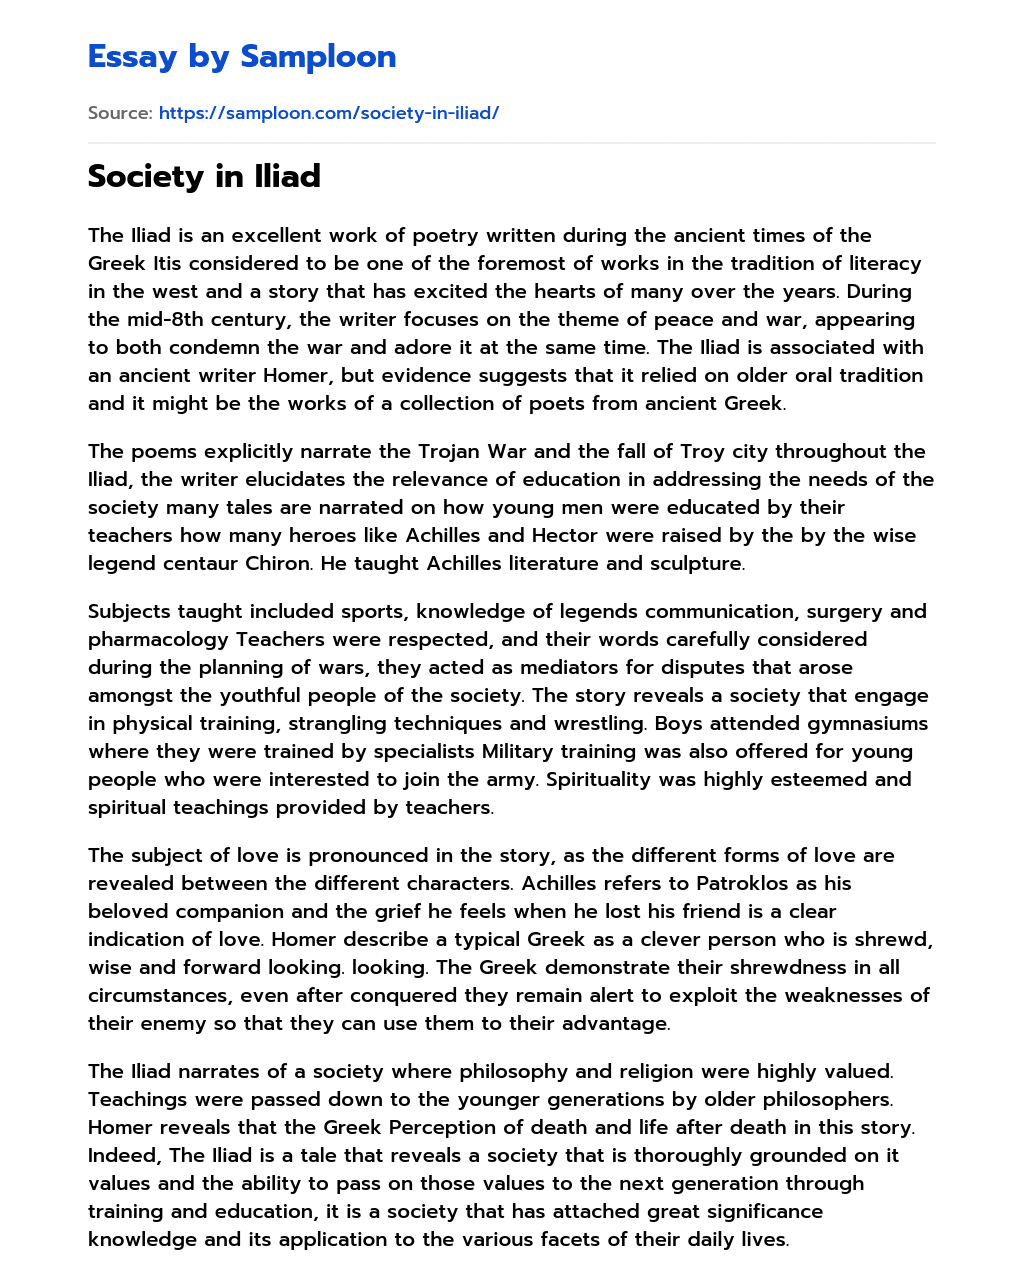 Society in Iliad essay